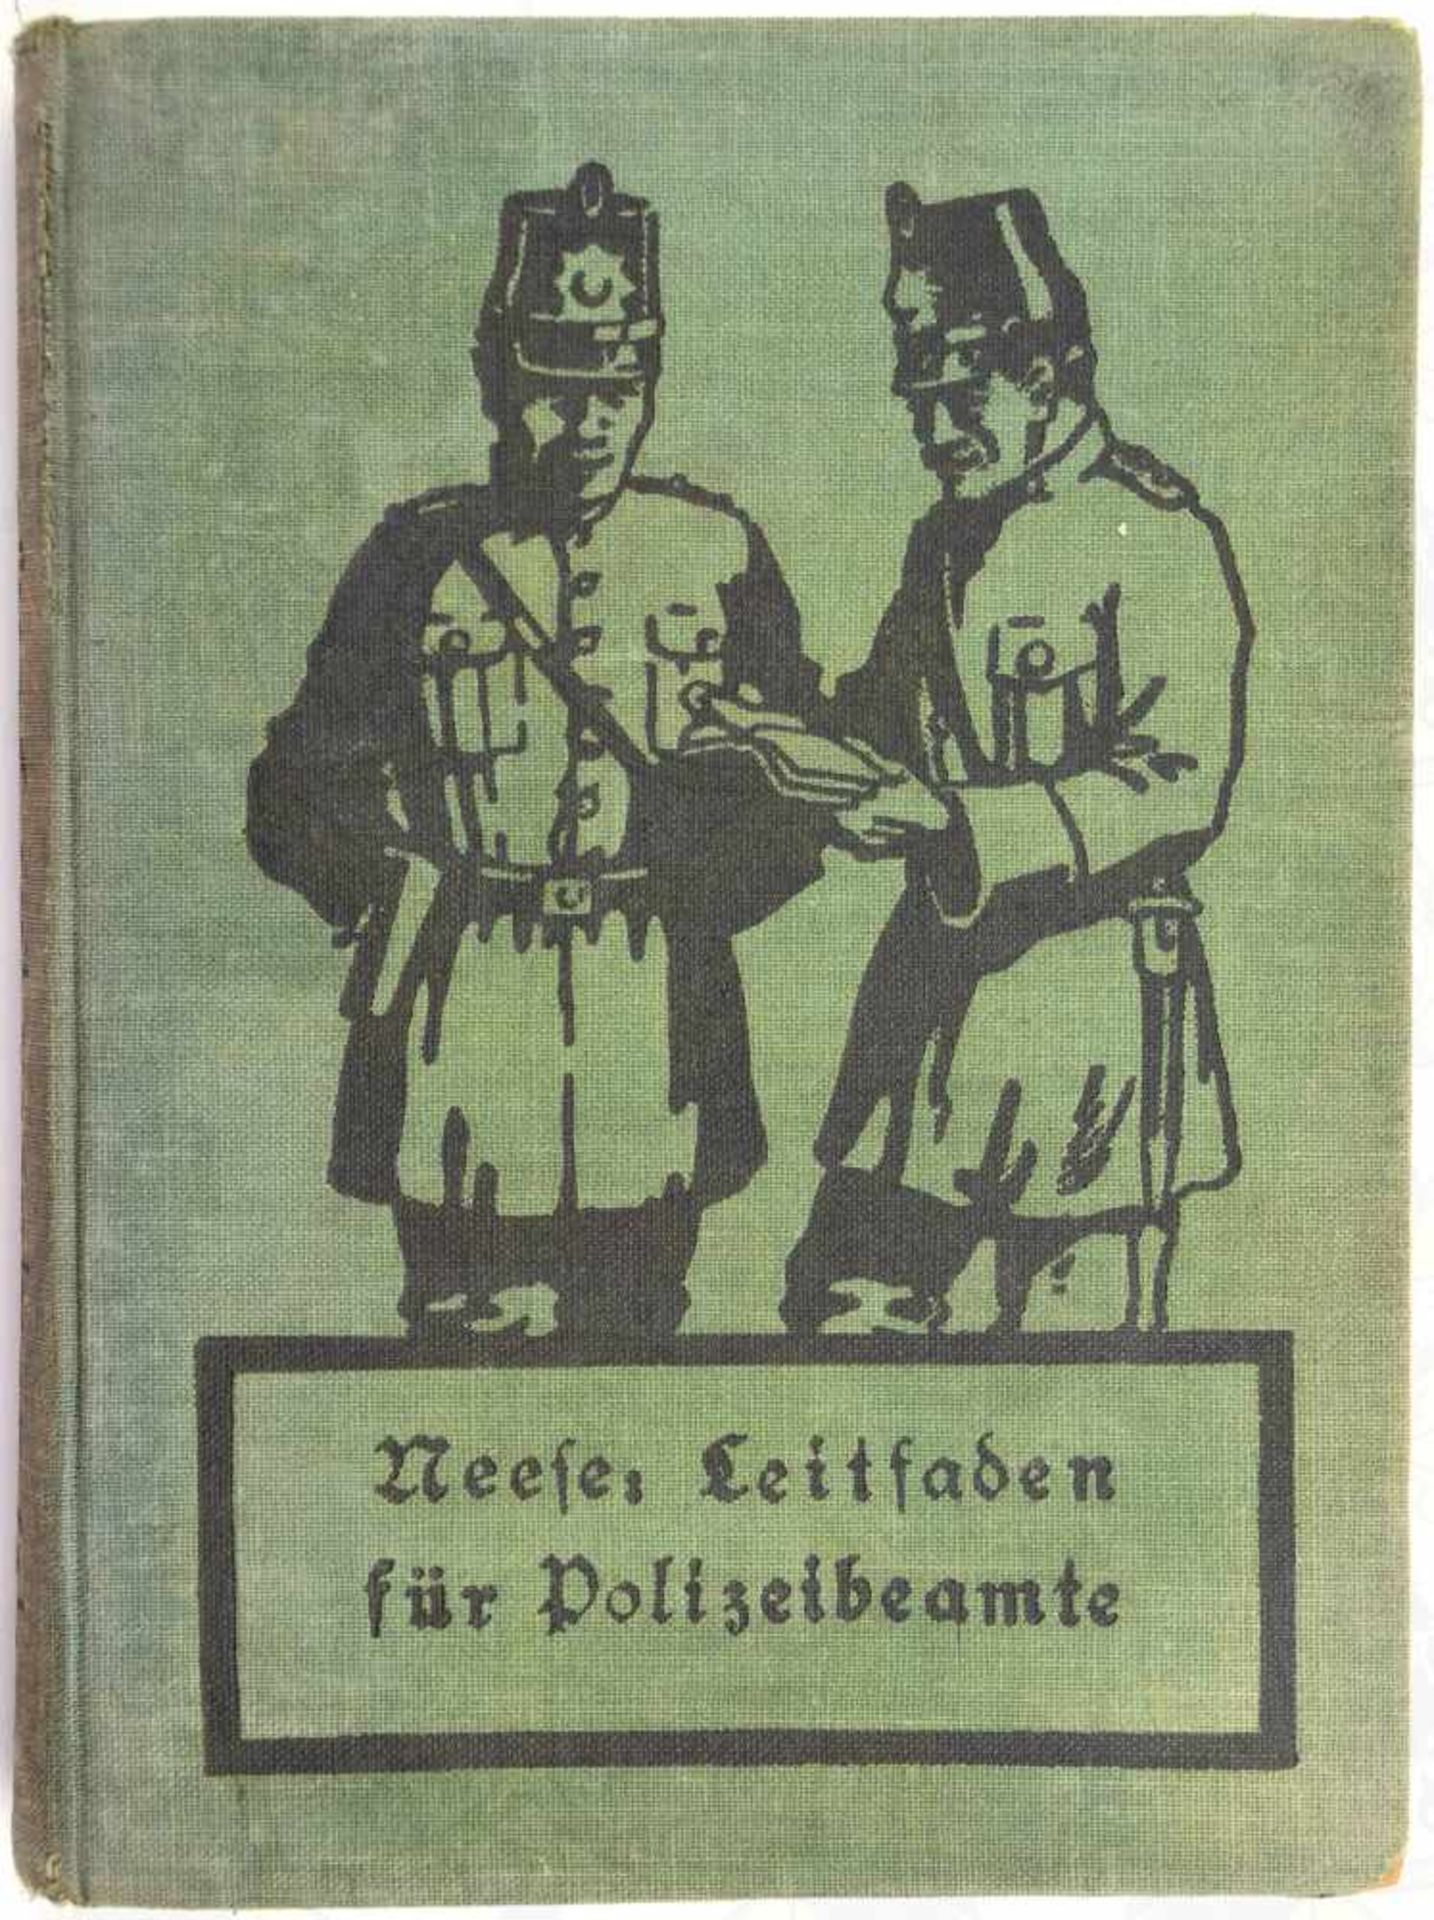 LEITFADEN FÜR POLIZEIBEAMTE, f. Polizei u. Landjäger, Major Neese, Bln. 1924, 384 S., gepr. Ln.